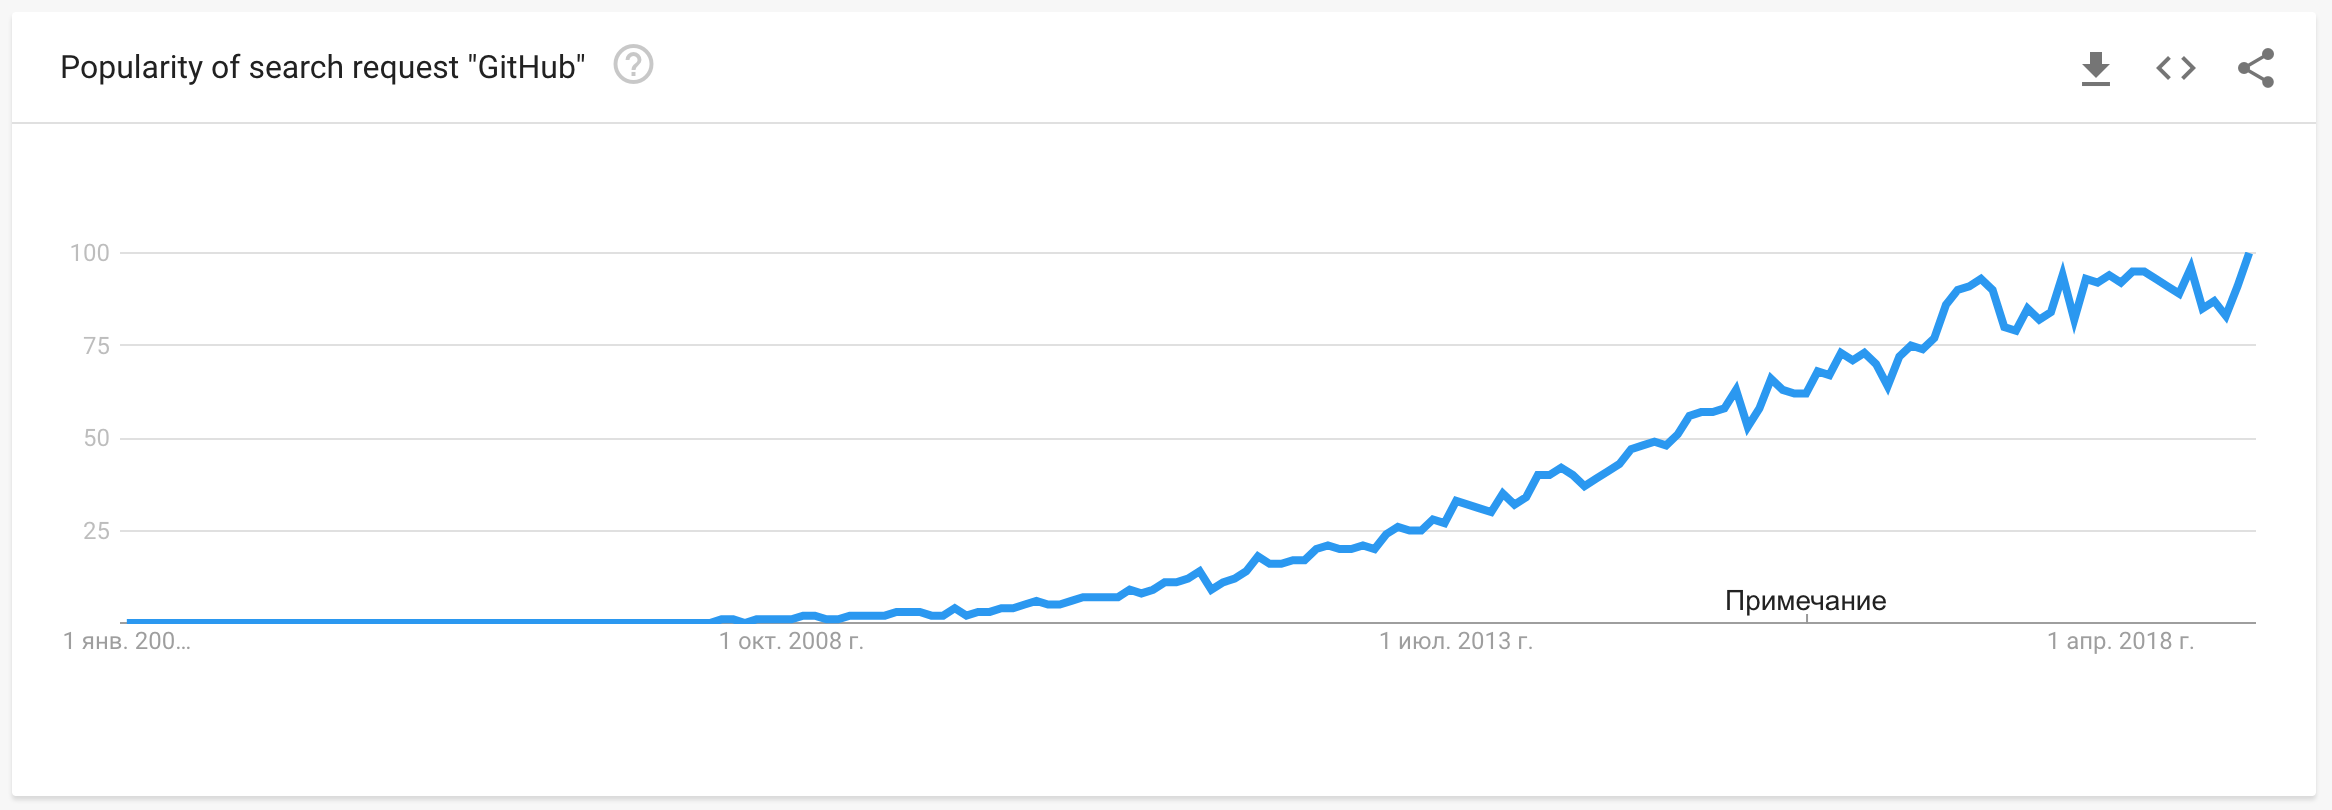 GitHub popularity growing graph